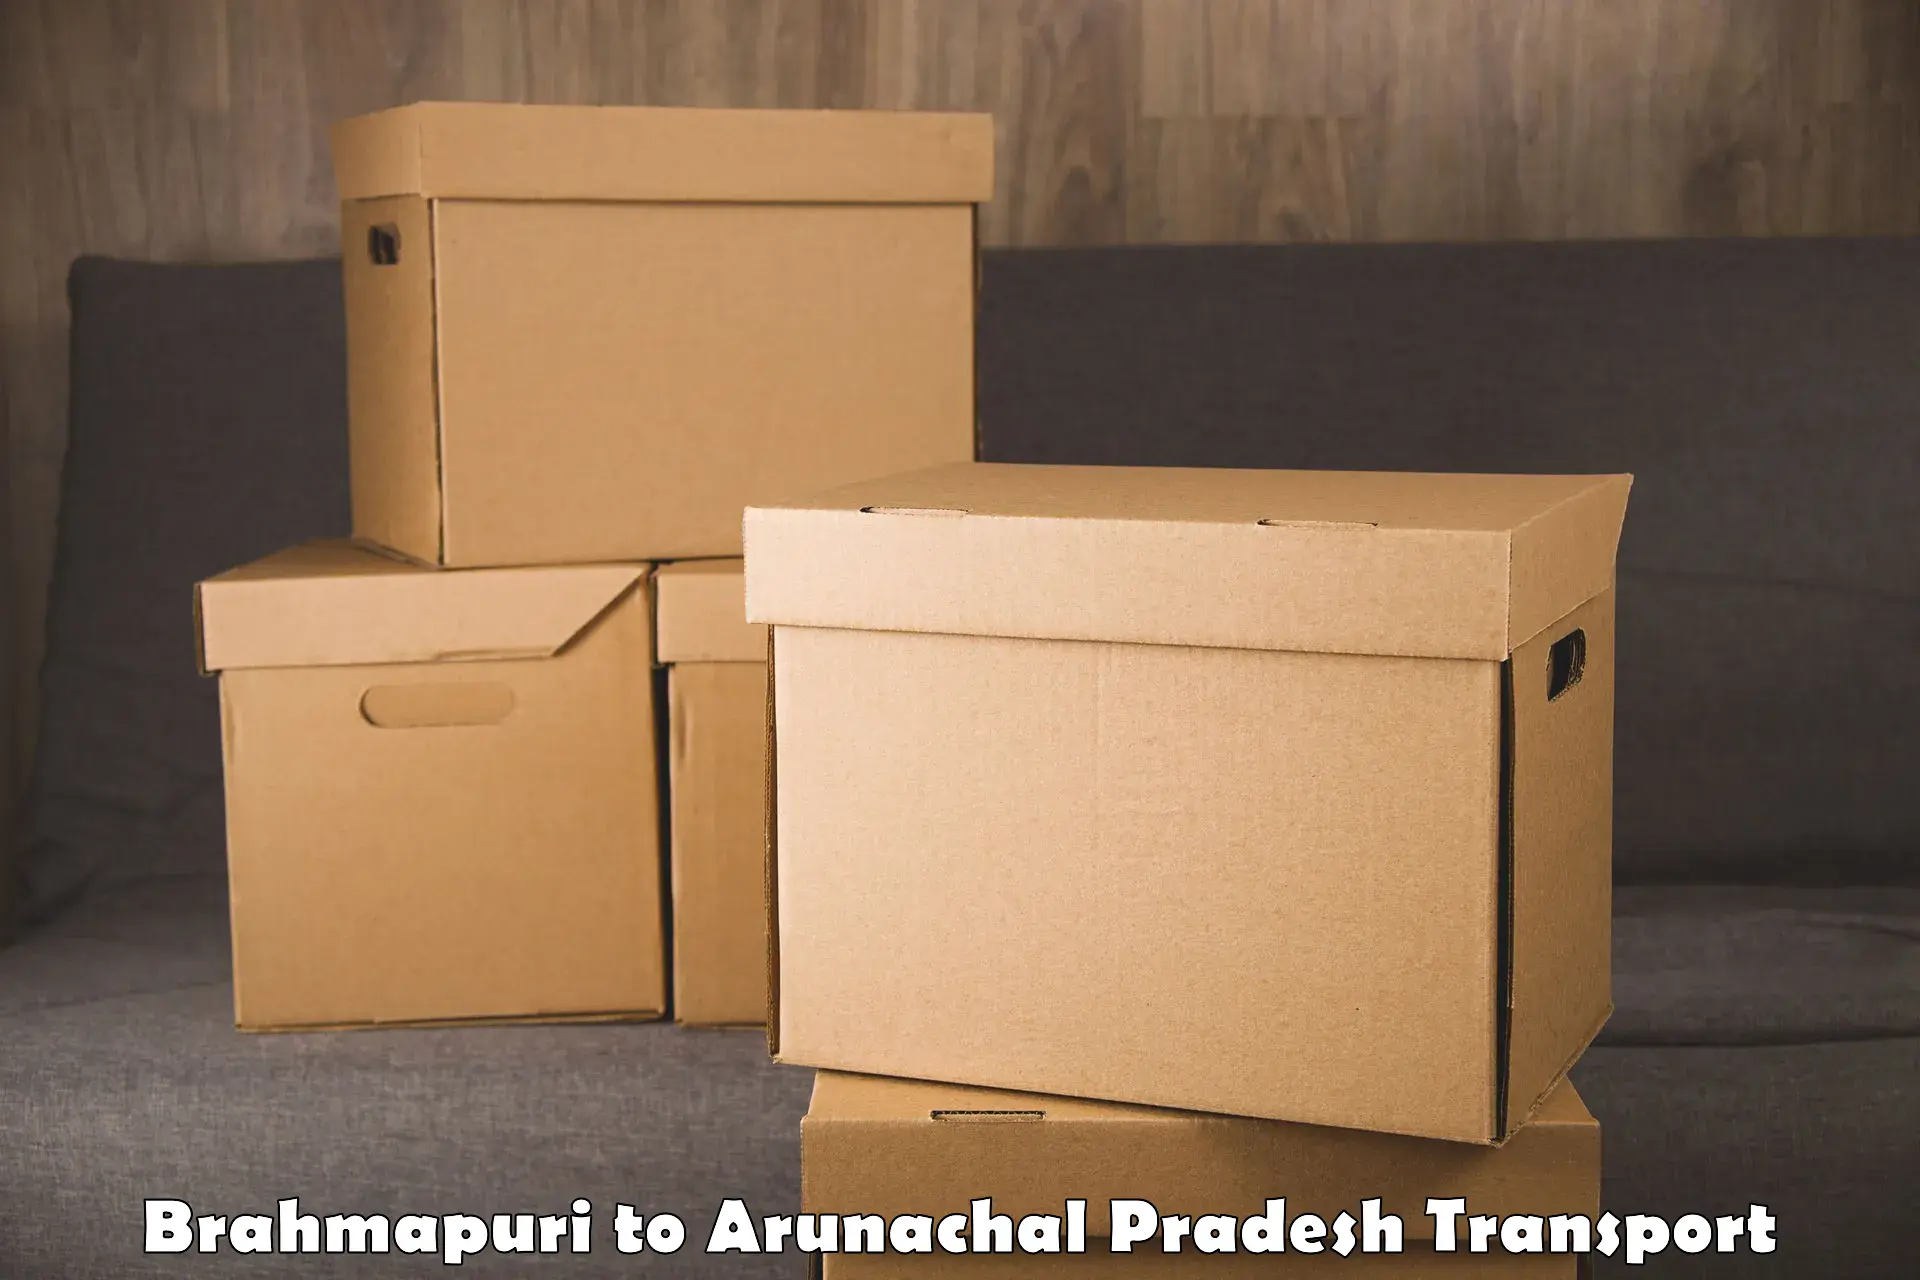 Transportation solution services in Brahmapuri to Arunachal Pradesh